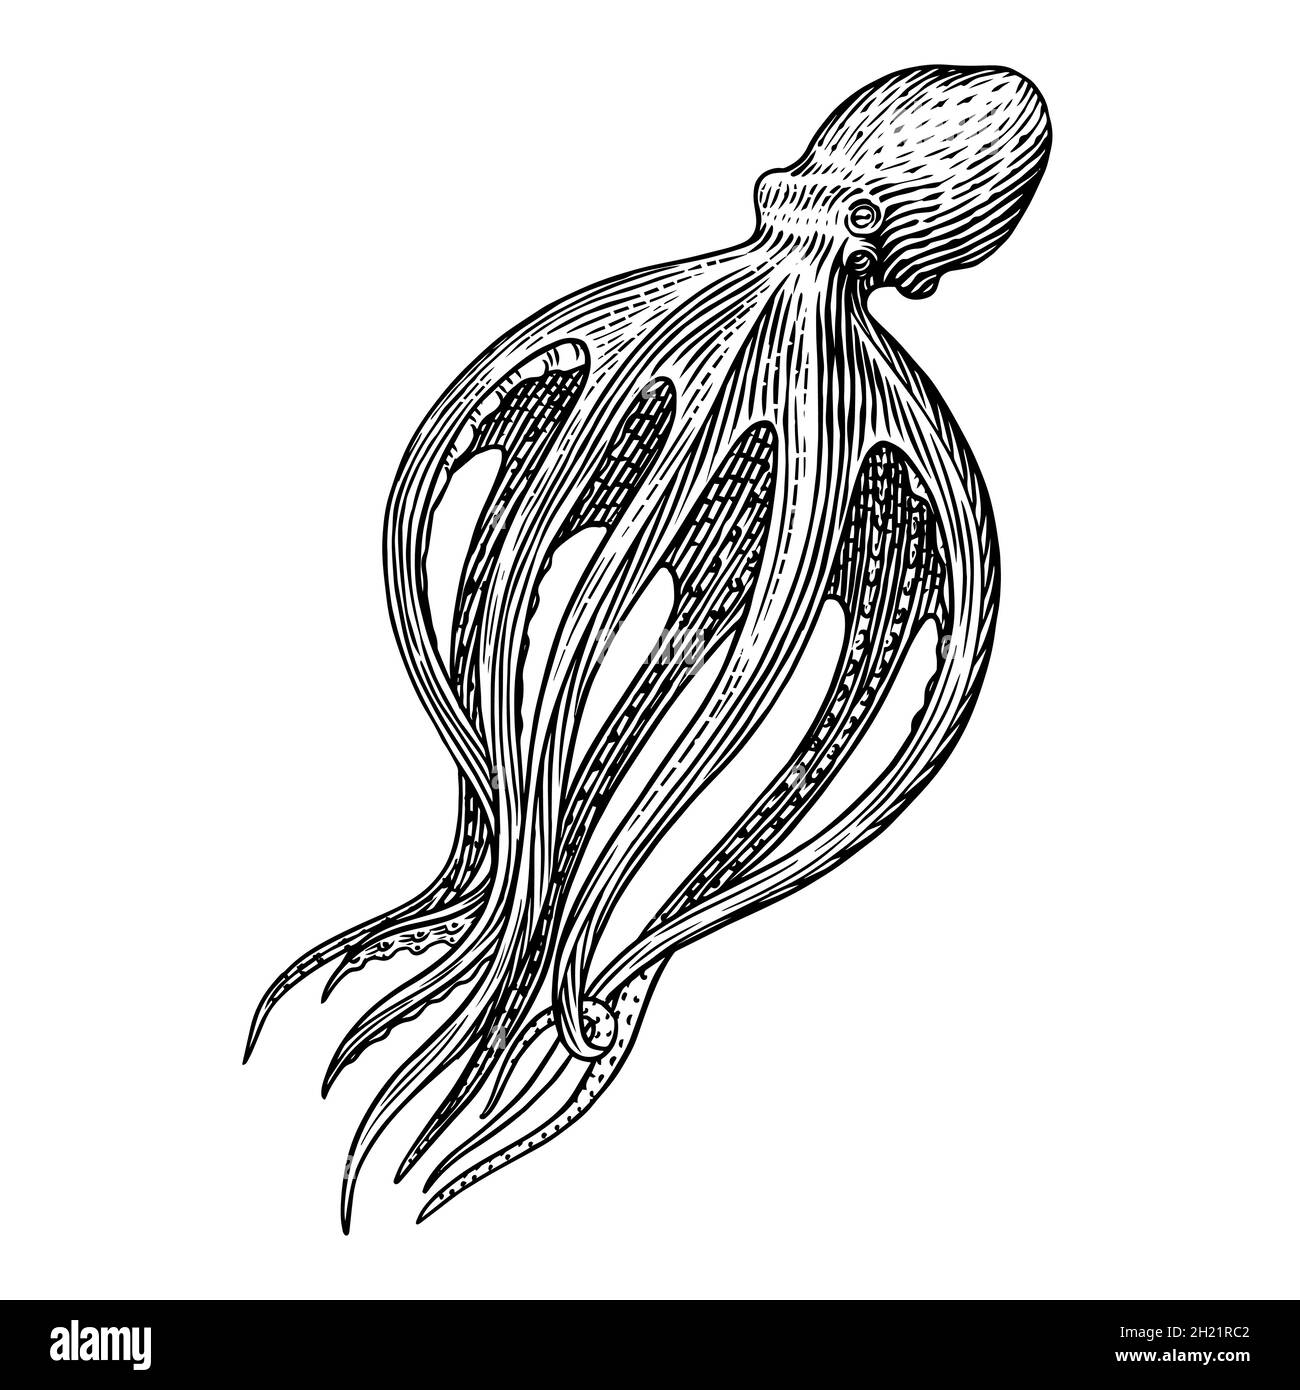 Meereskrake. Eingraviert von Hand gezeichnet in alter Skizze, Vintage Kreatur. Nautisch oder marine, Monster. Tier im Ozean. Vorlage für Logos, Etiketten und Stock Vektor